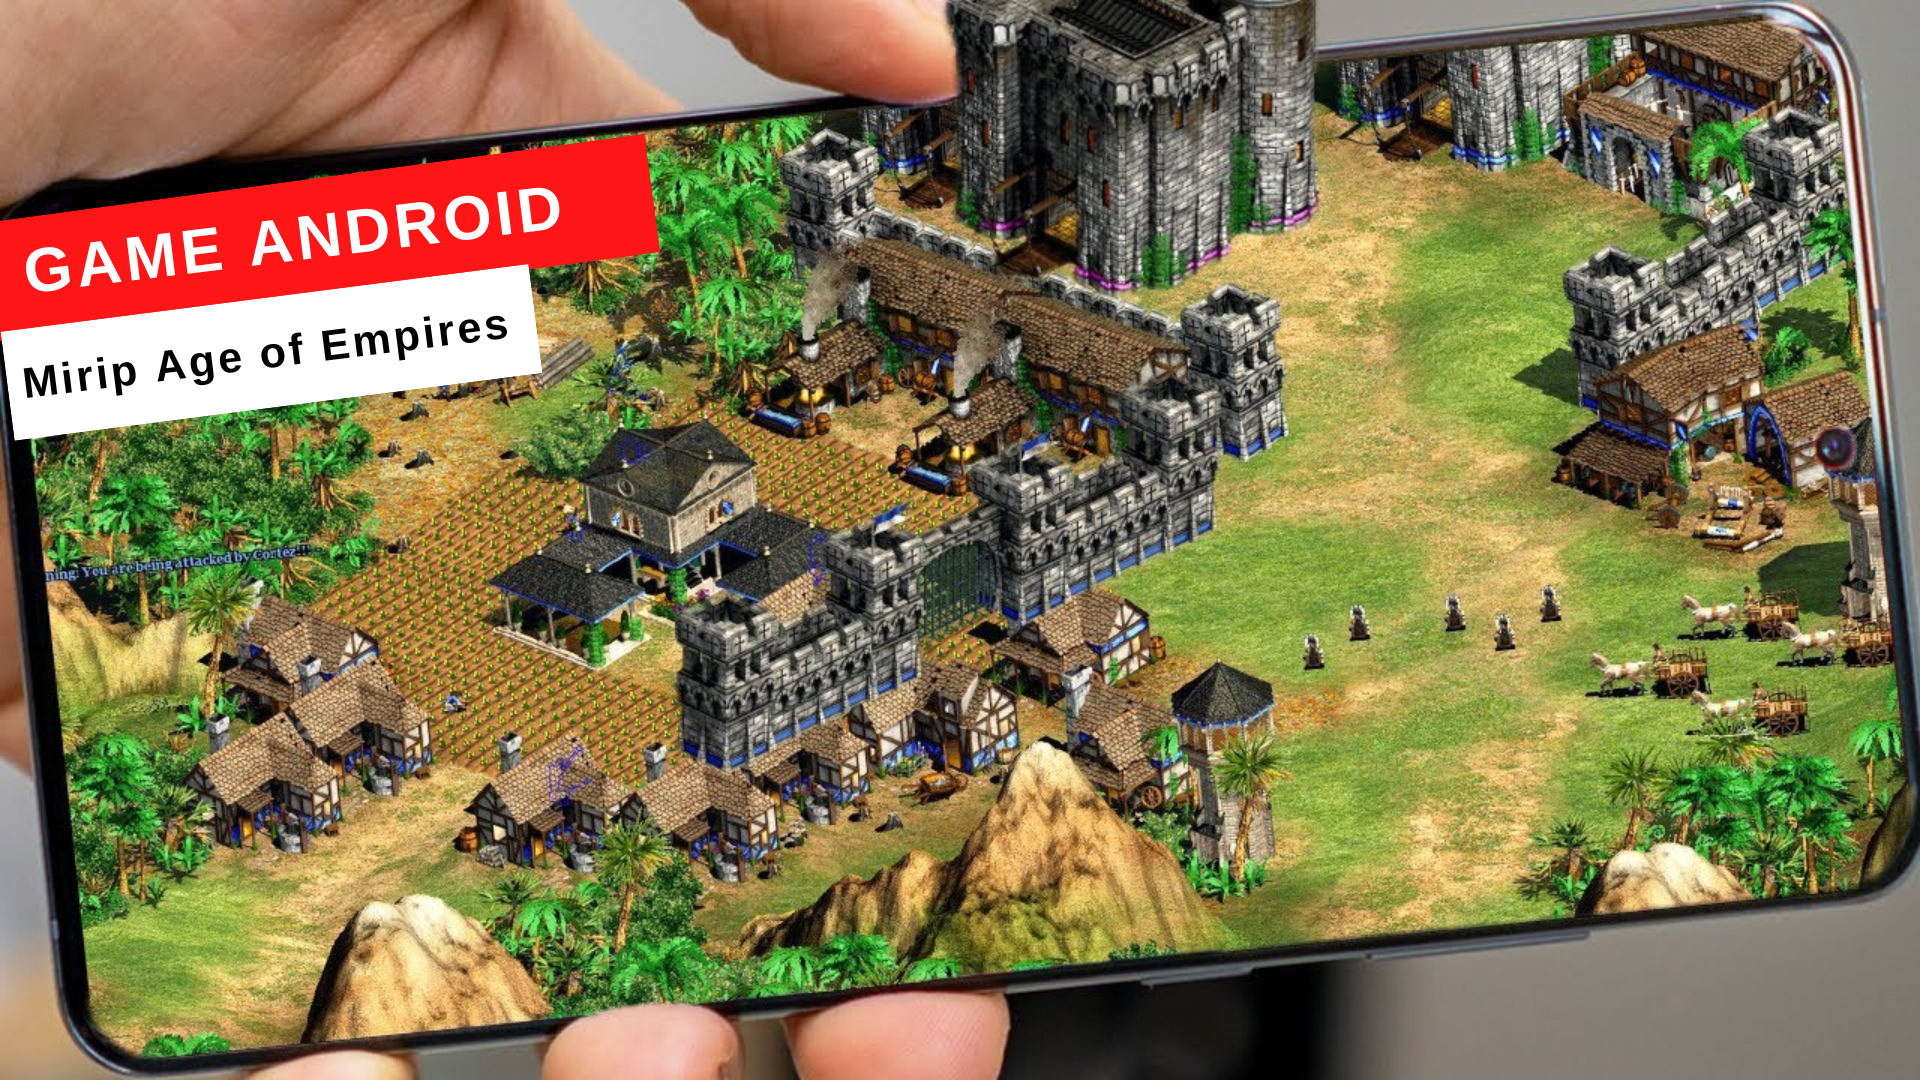 8 Game Android Mirip Age of Empires, Wajib Coba!